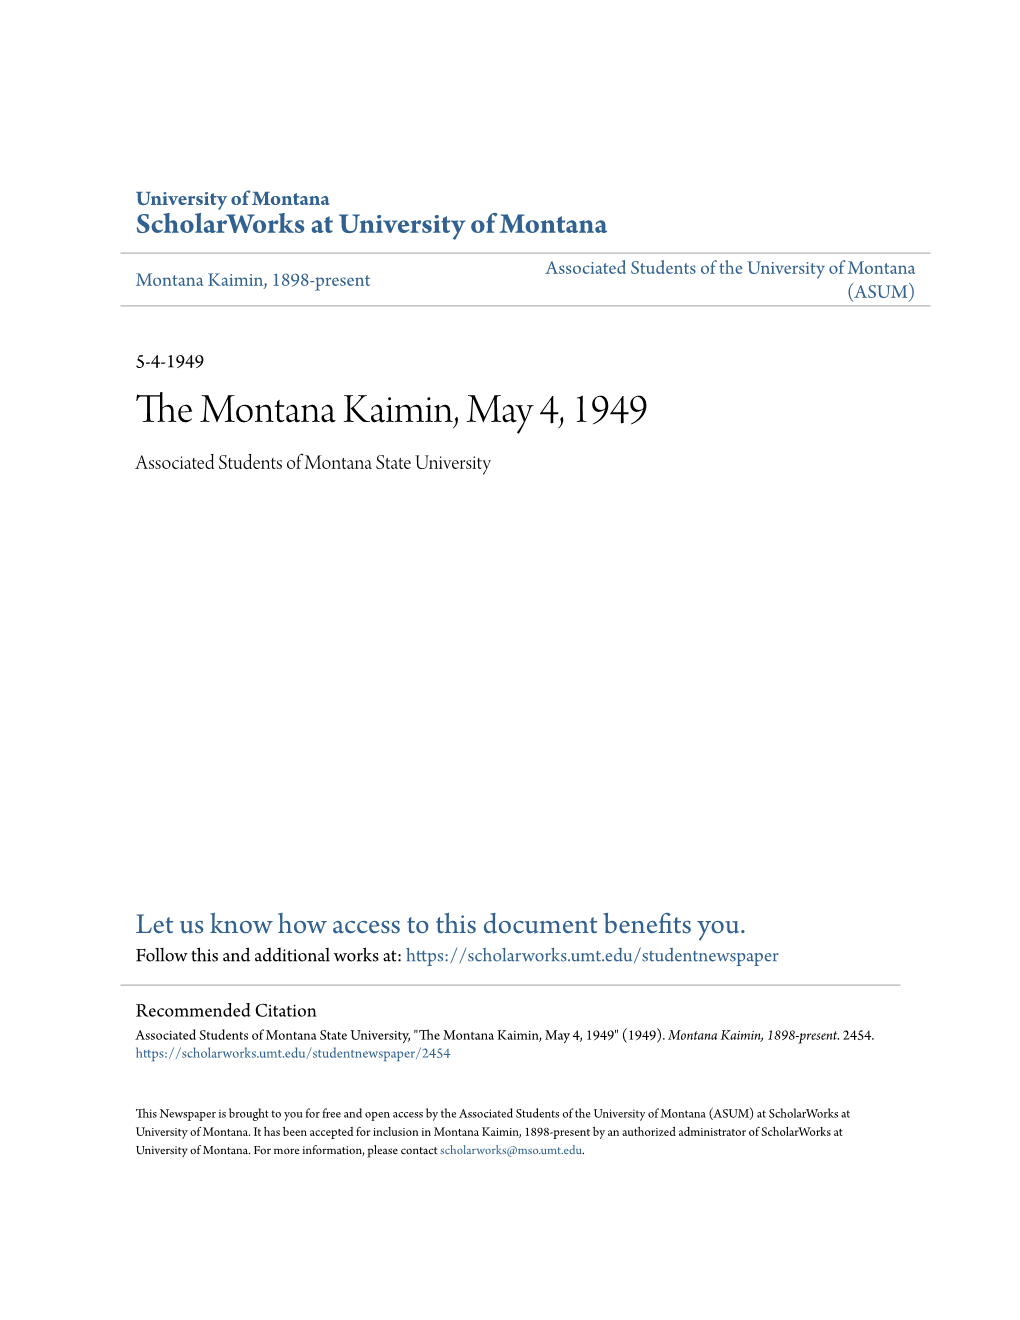 The Montana Kaimin, May 4, 1949